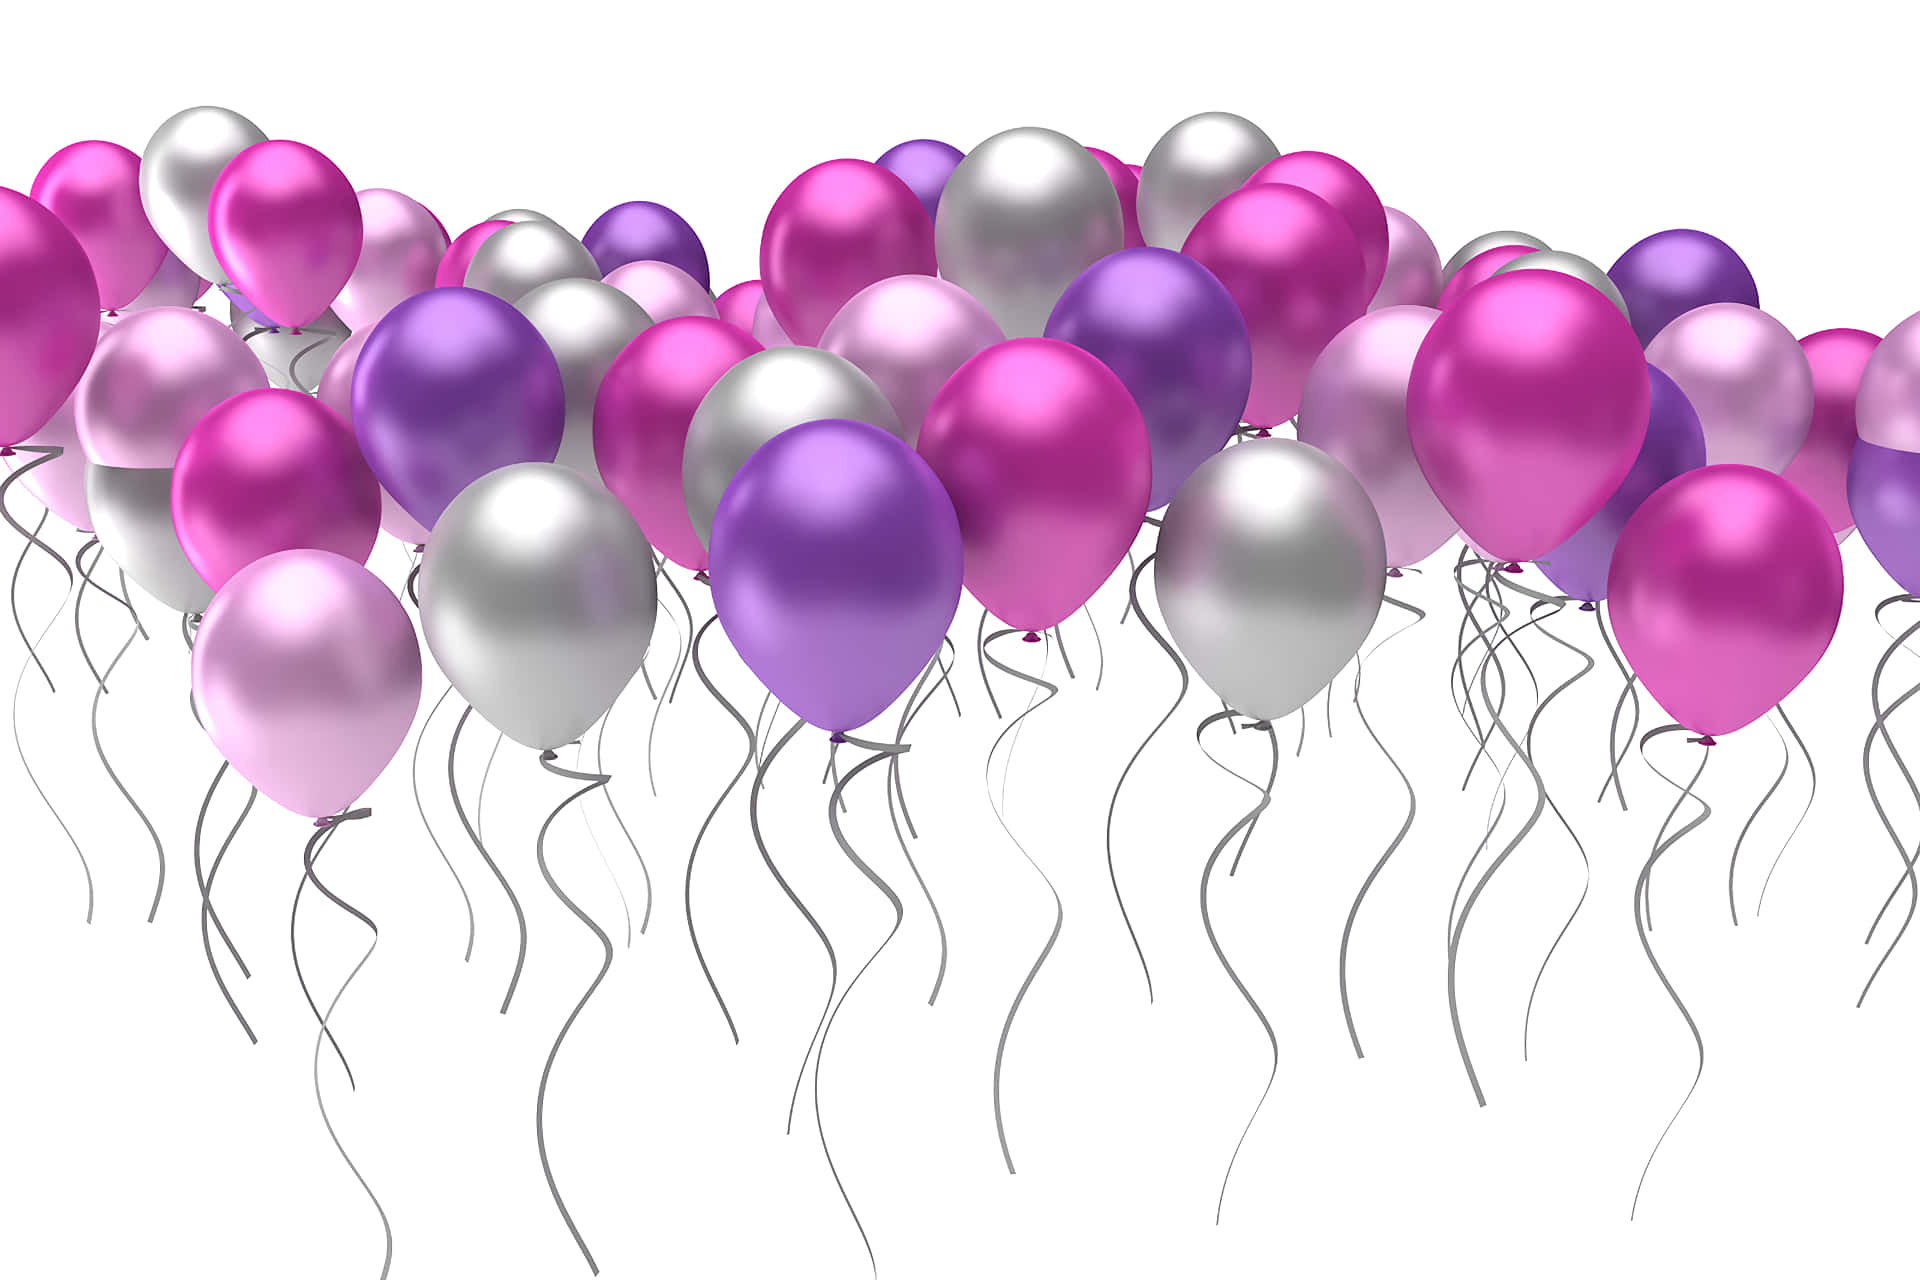 Balõesde Aniversário Em Roxo E Prata Numa Imagem Estética.